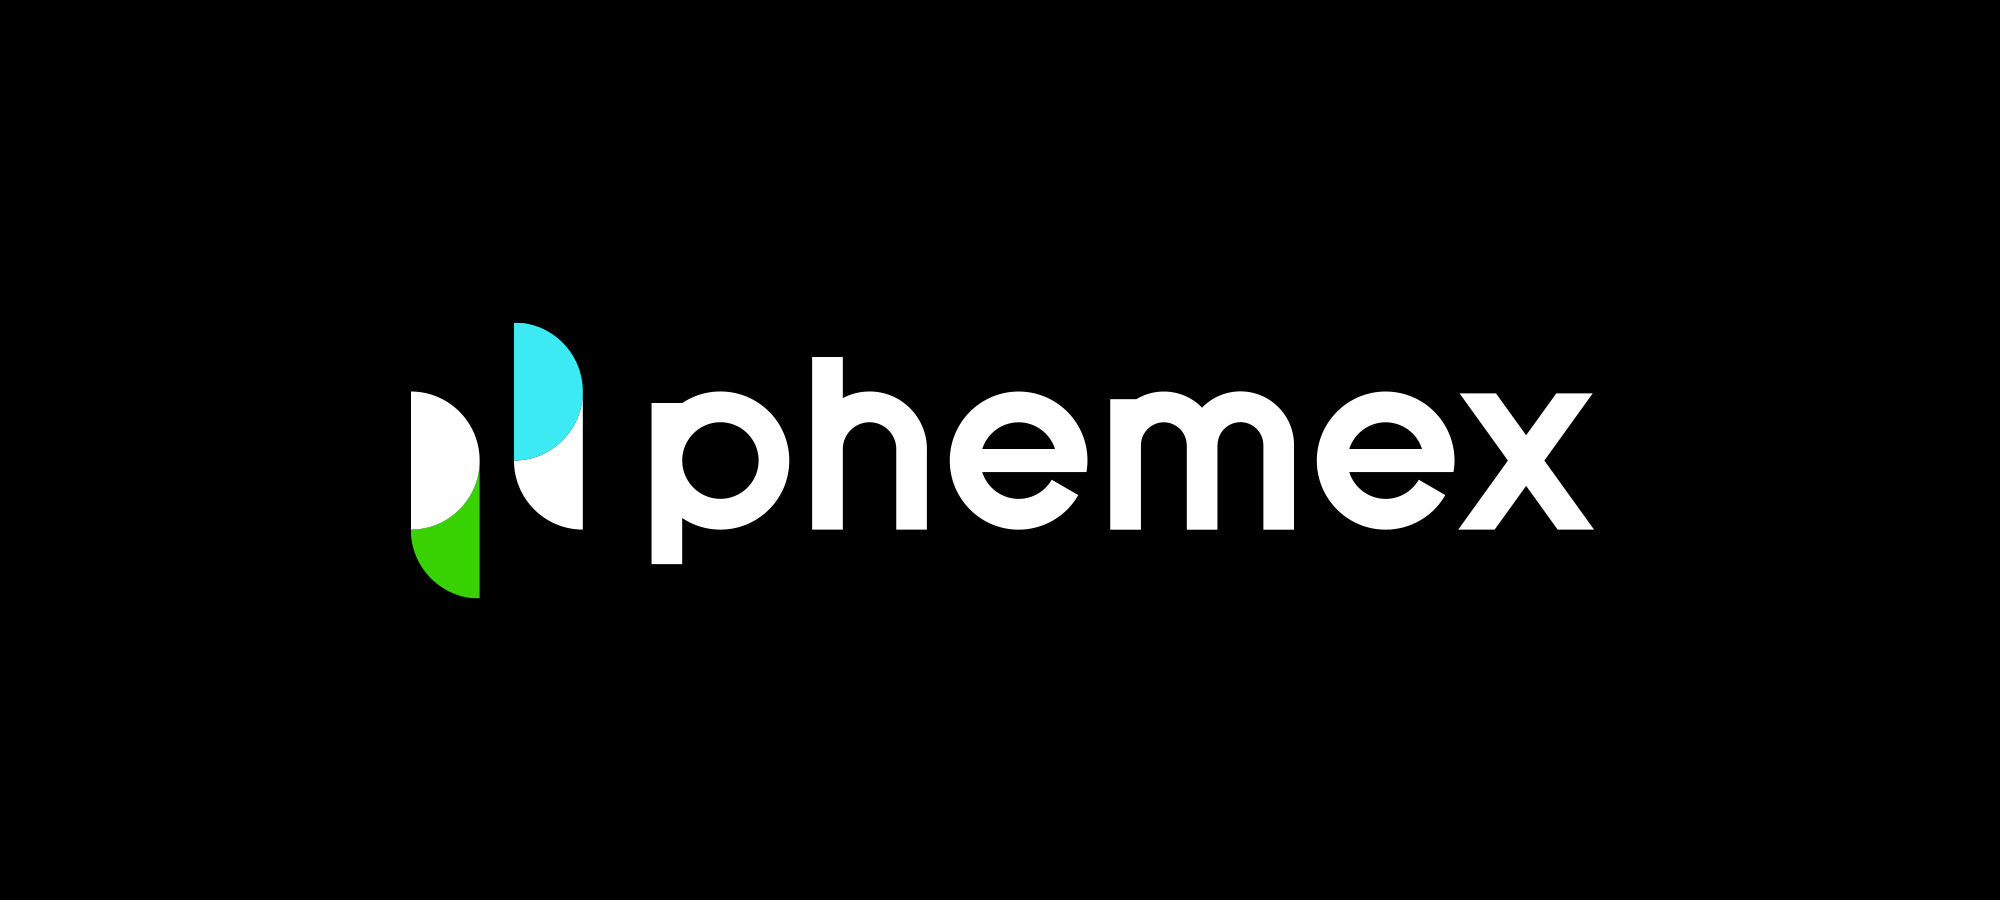 Phemex ロゴ